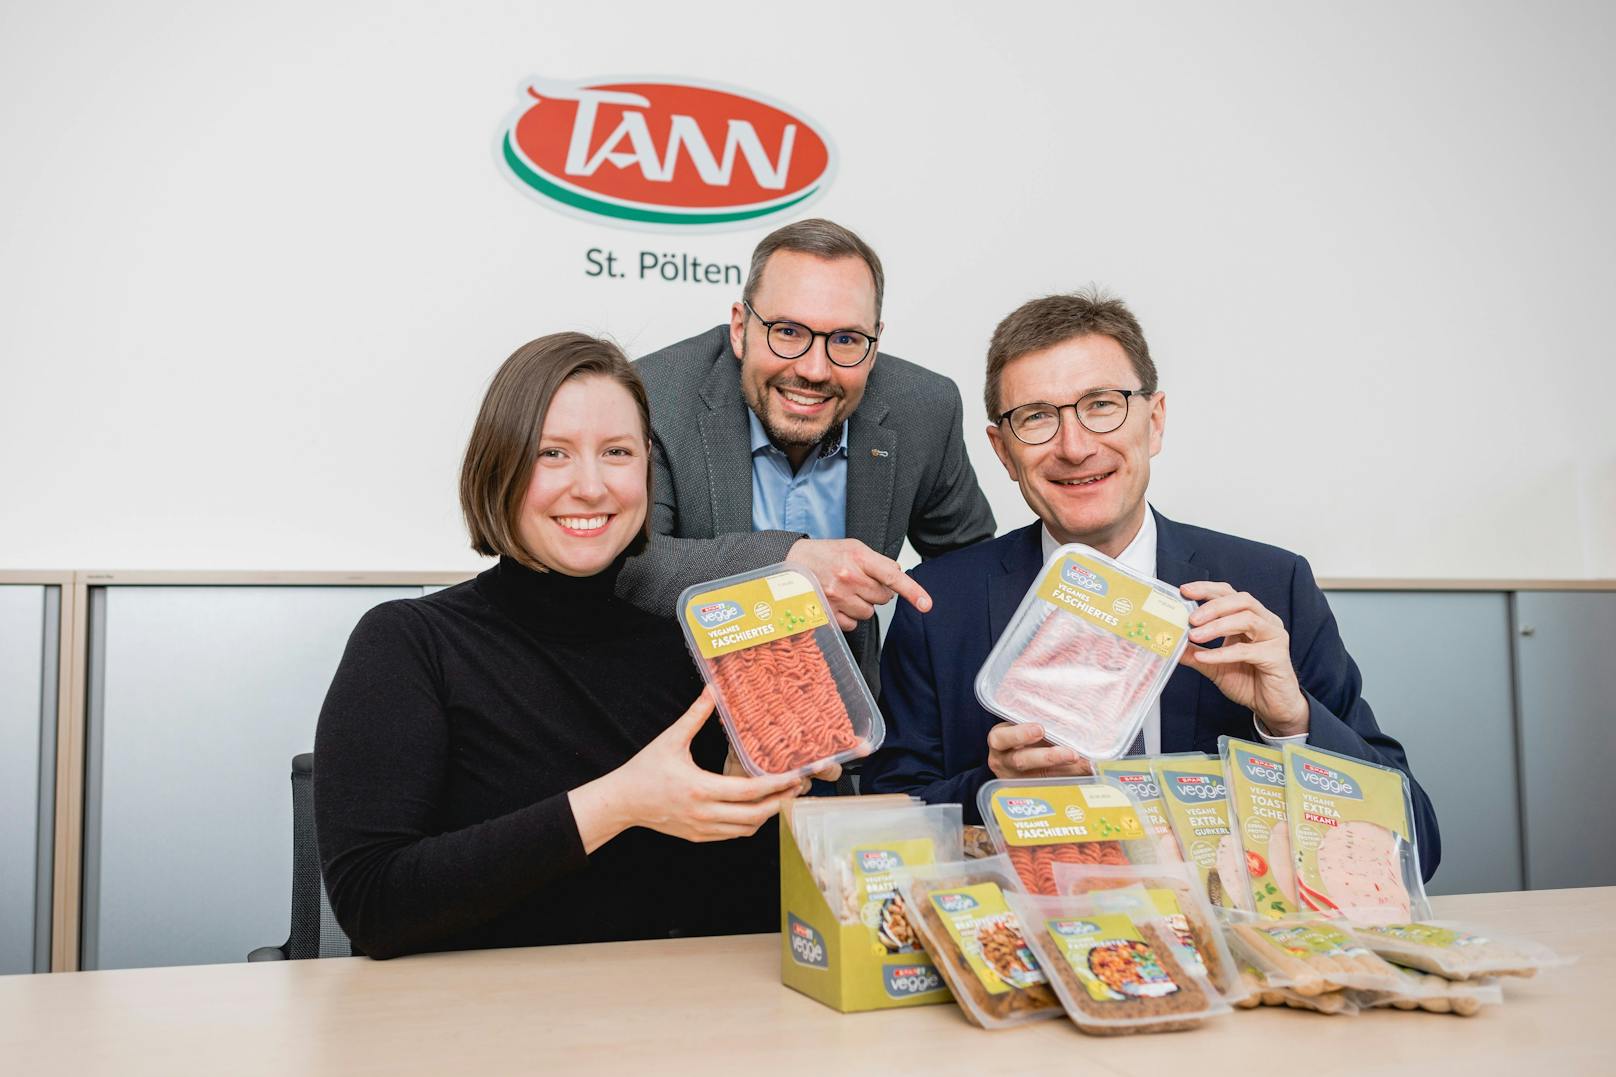 Produktentwicklerin Katharina Keferböck, TANN-Leiter Leopold Scharmer und SPAR-Geschäftsführer Alois Huber sind stolz auf die Produktinnovationen von TANN St. Pölten  